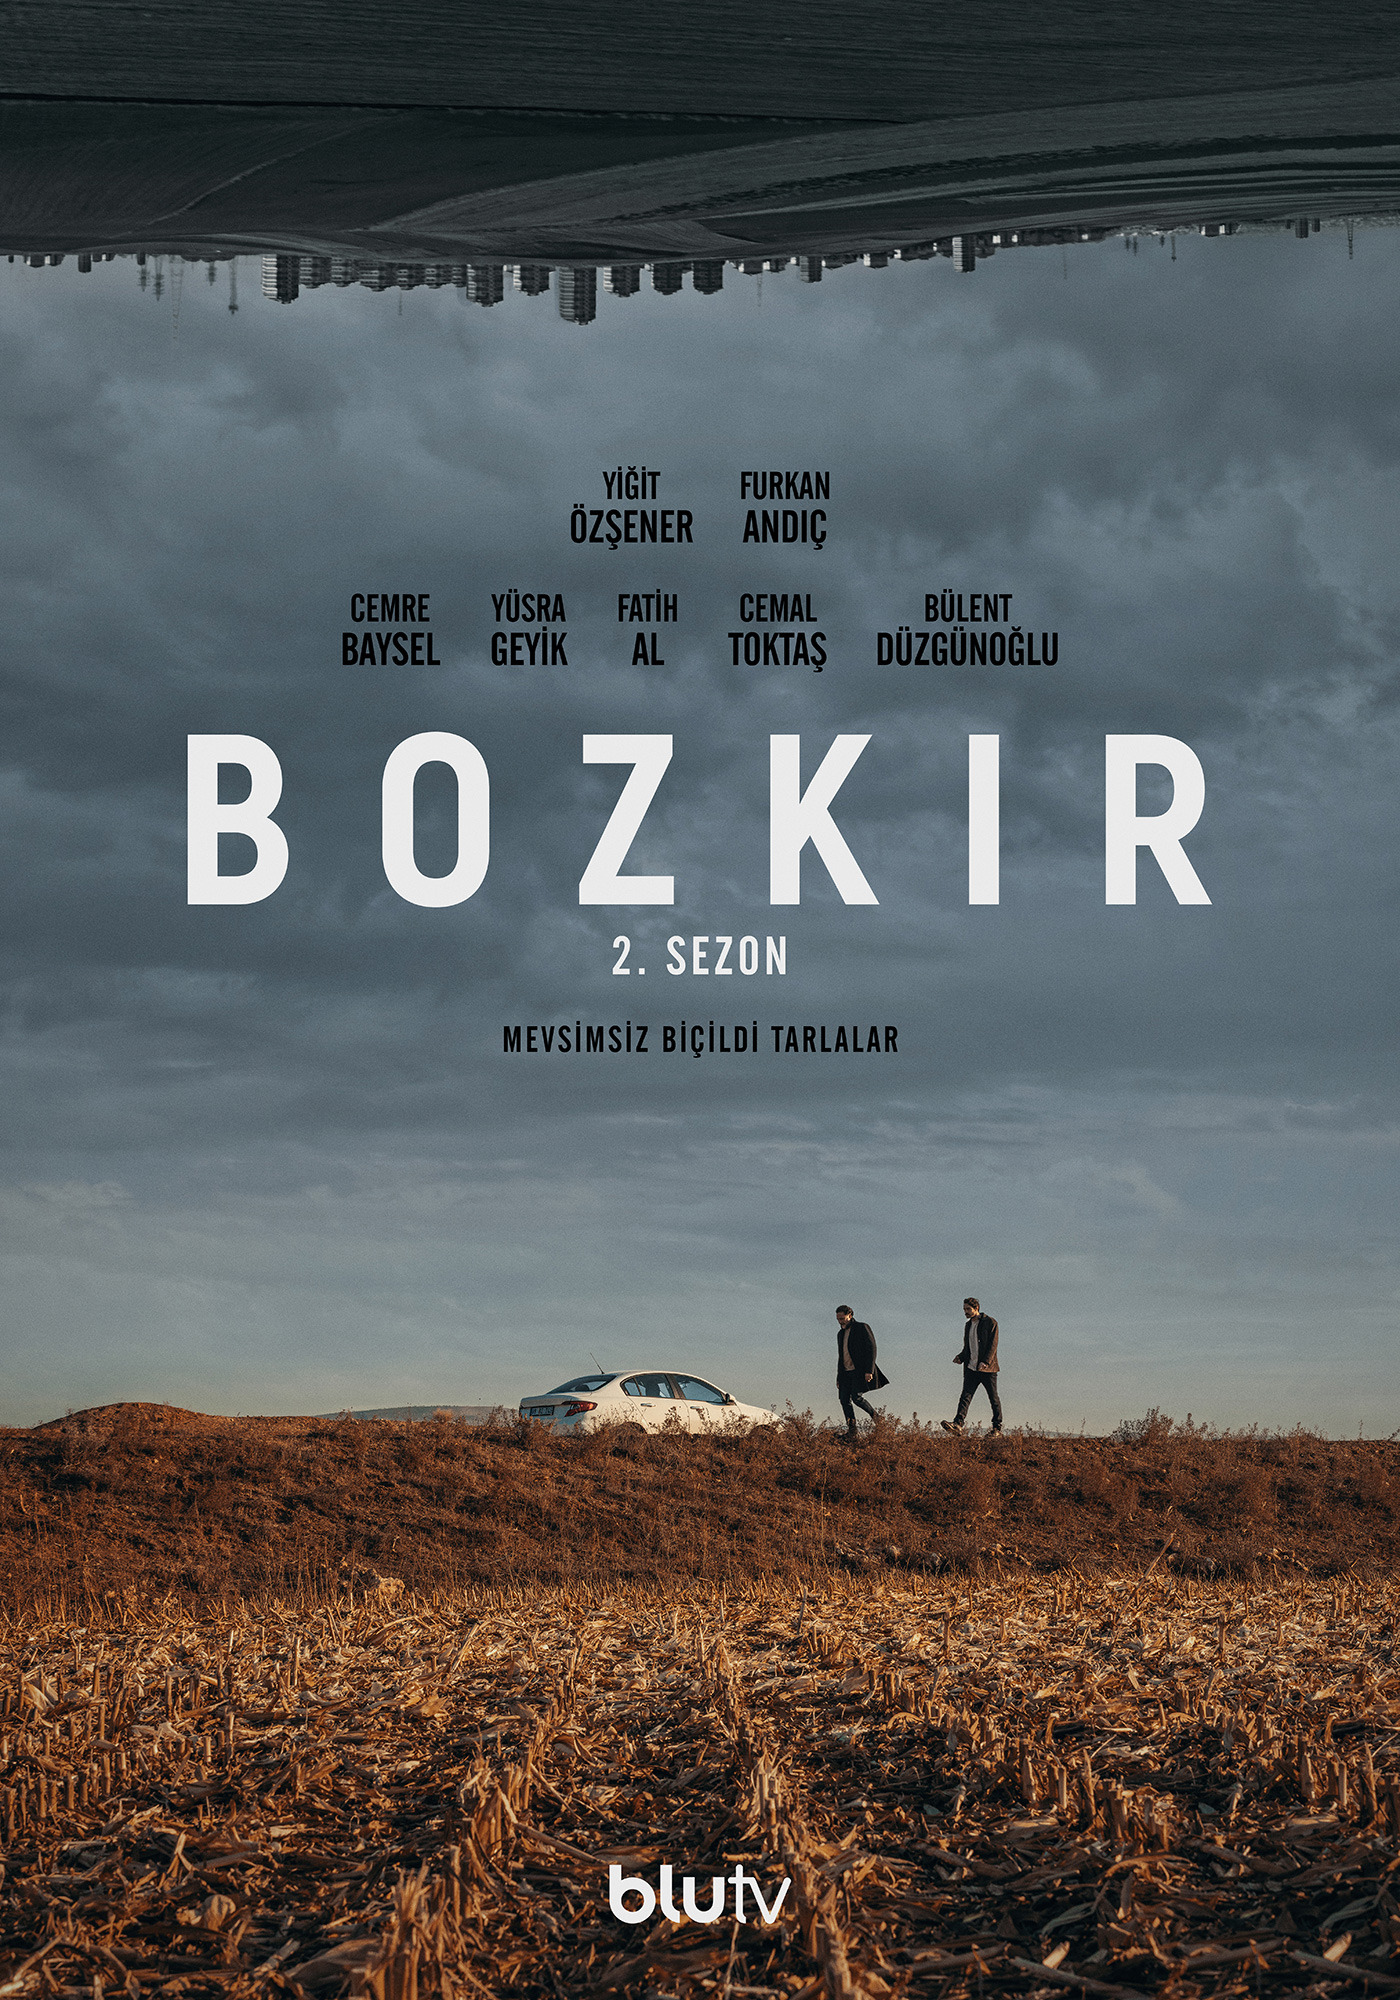 Mega Sized TV Poster Image for Bozkir (#10 of 10)